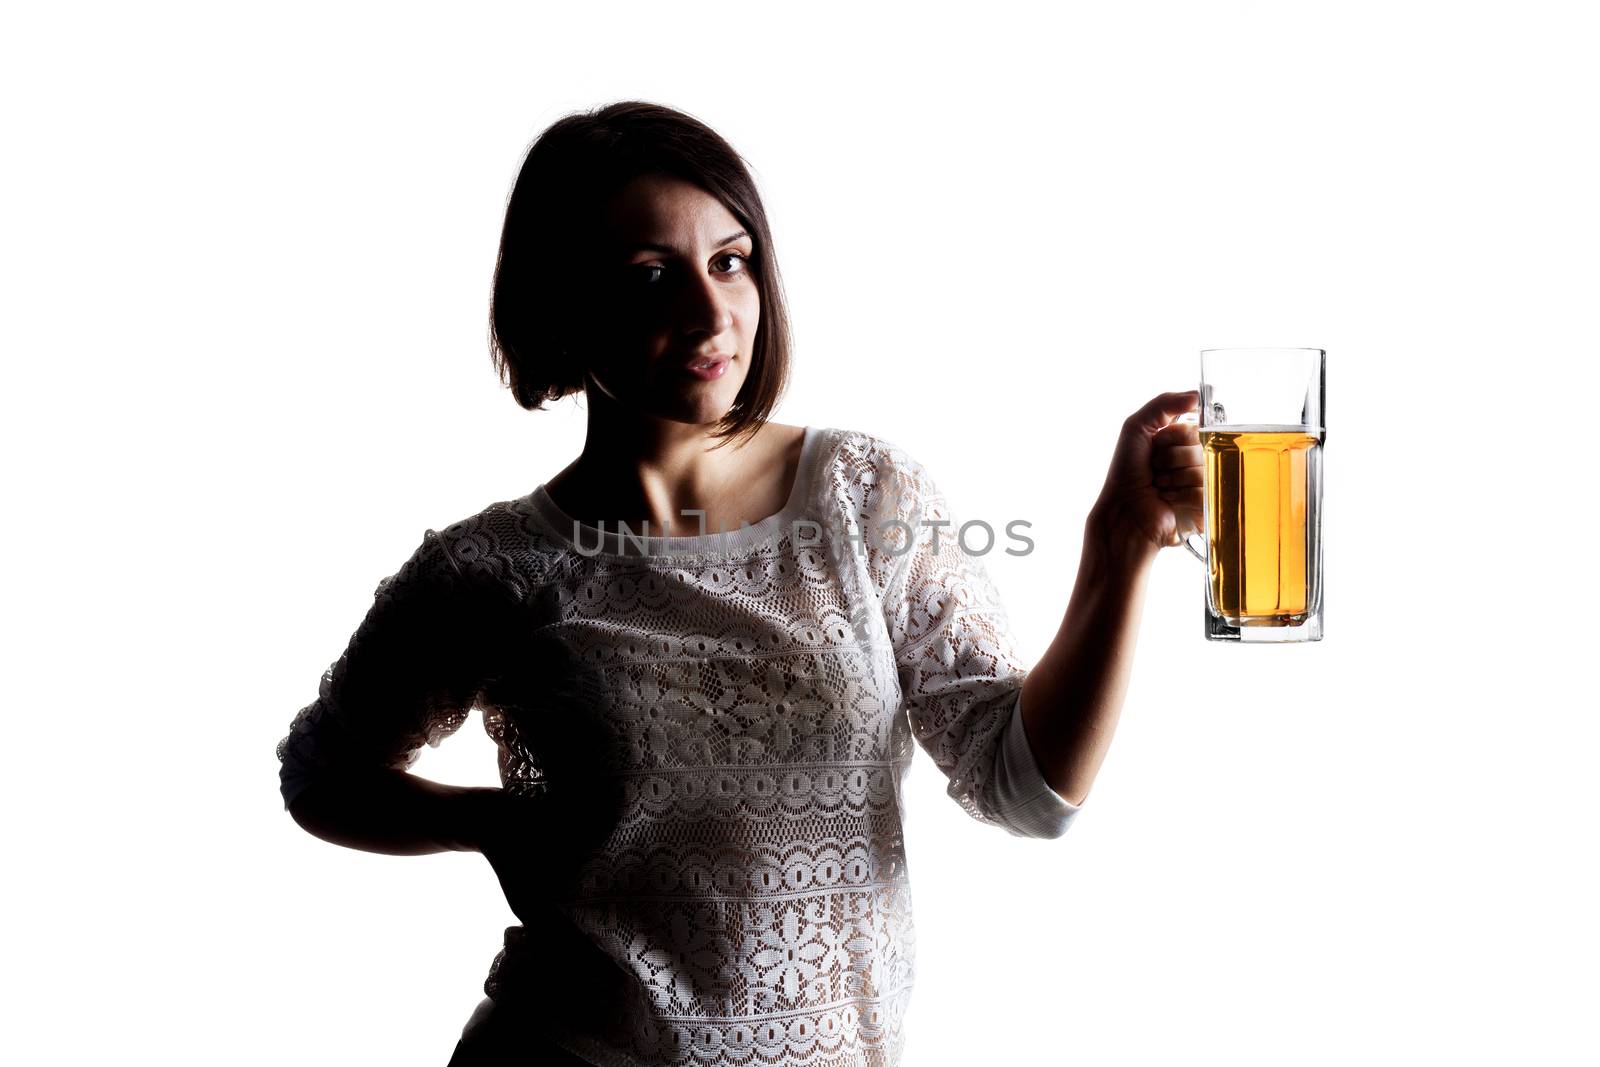 half silhouette girl holding beer mug against white background